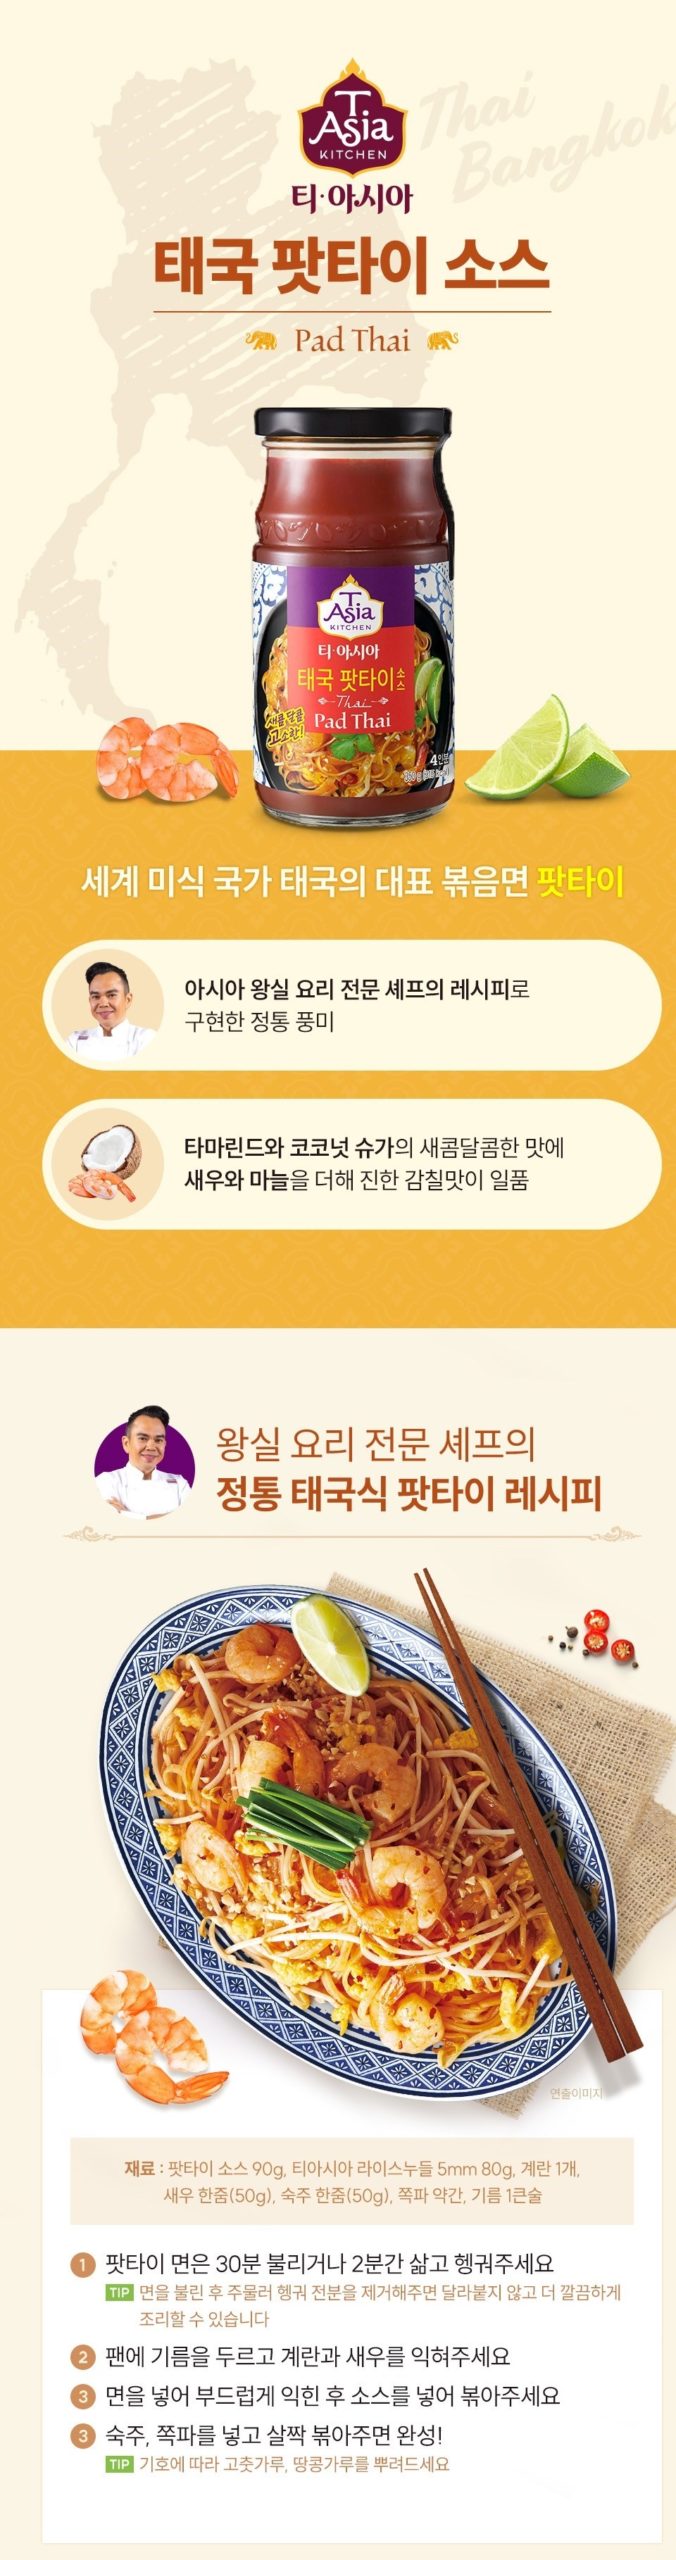 韓國食品-[샘표] 티아시아키친 태국 팟타이 소스 350g